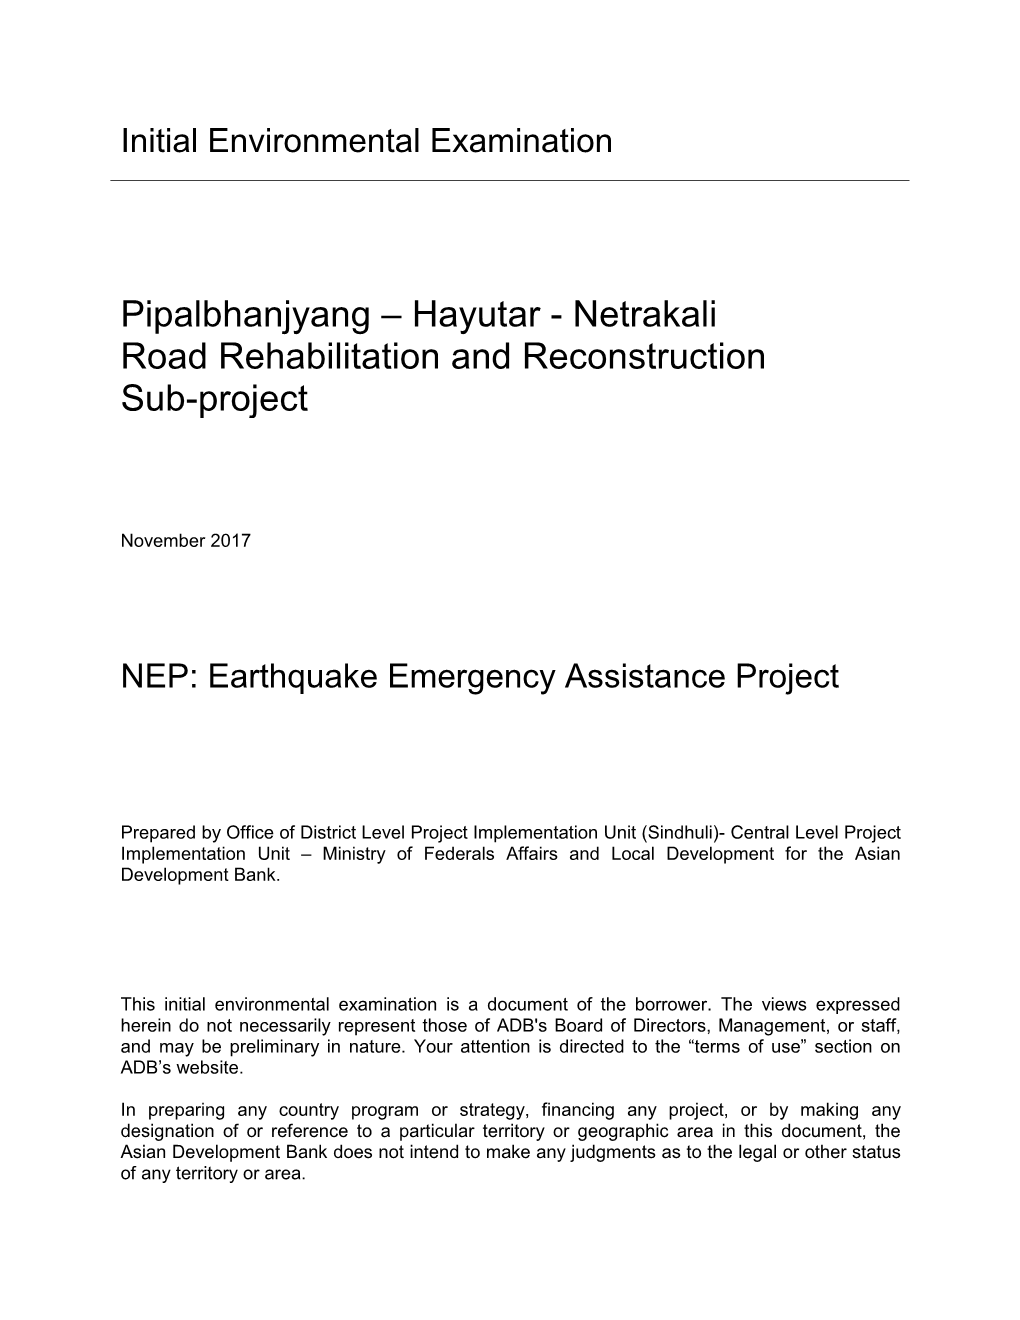 Netrakali Road Rehabilitation and Reconstruction Sub-Project